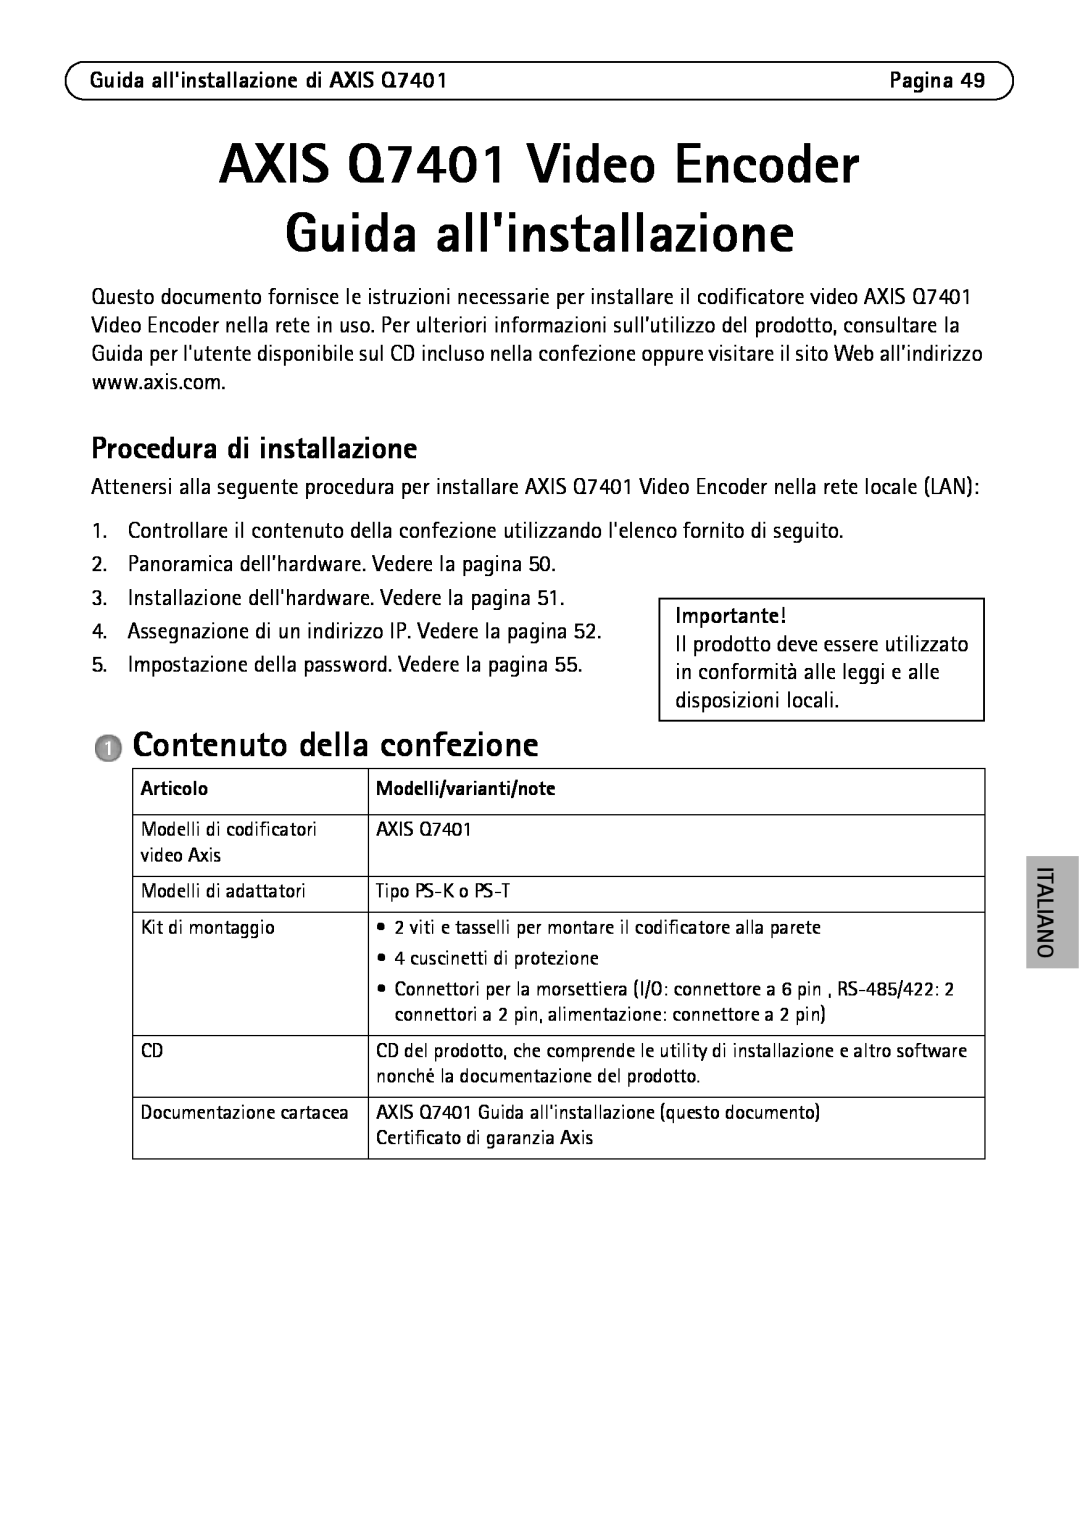 Axis Communications manual AXIS Q7401 Video Encoder Guida allinstallazione, Contenuto della confezione, Importante 